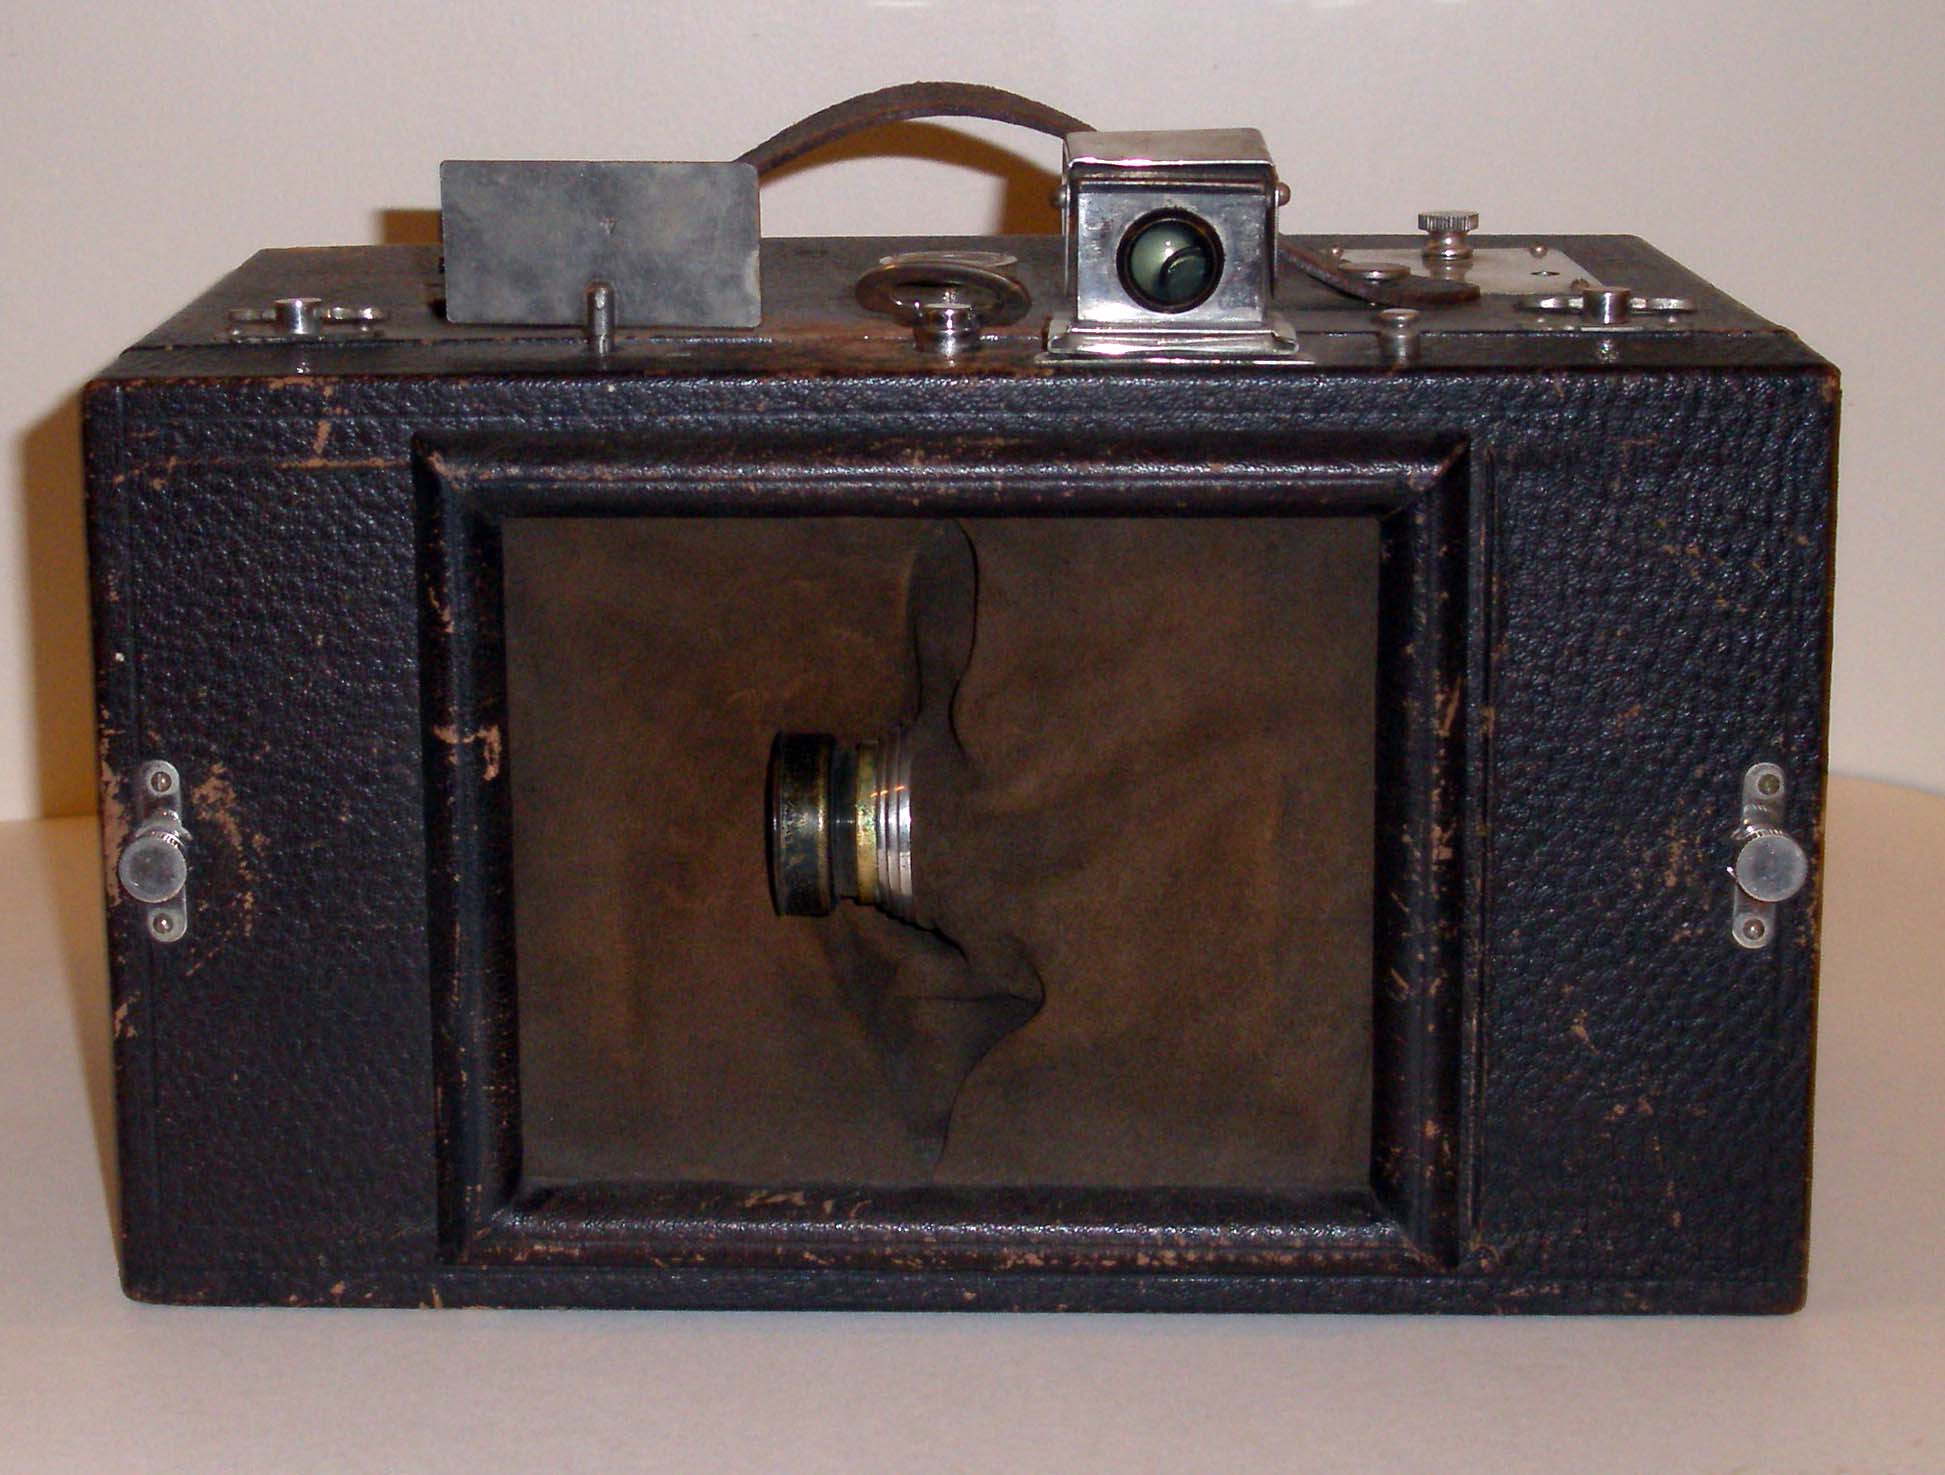 Al-Vista camera